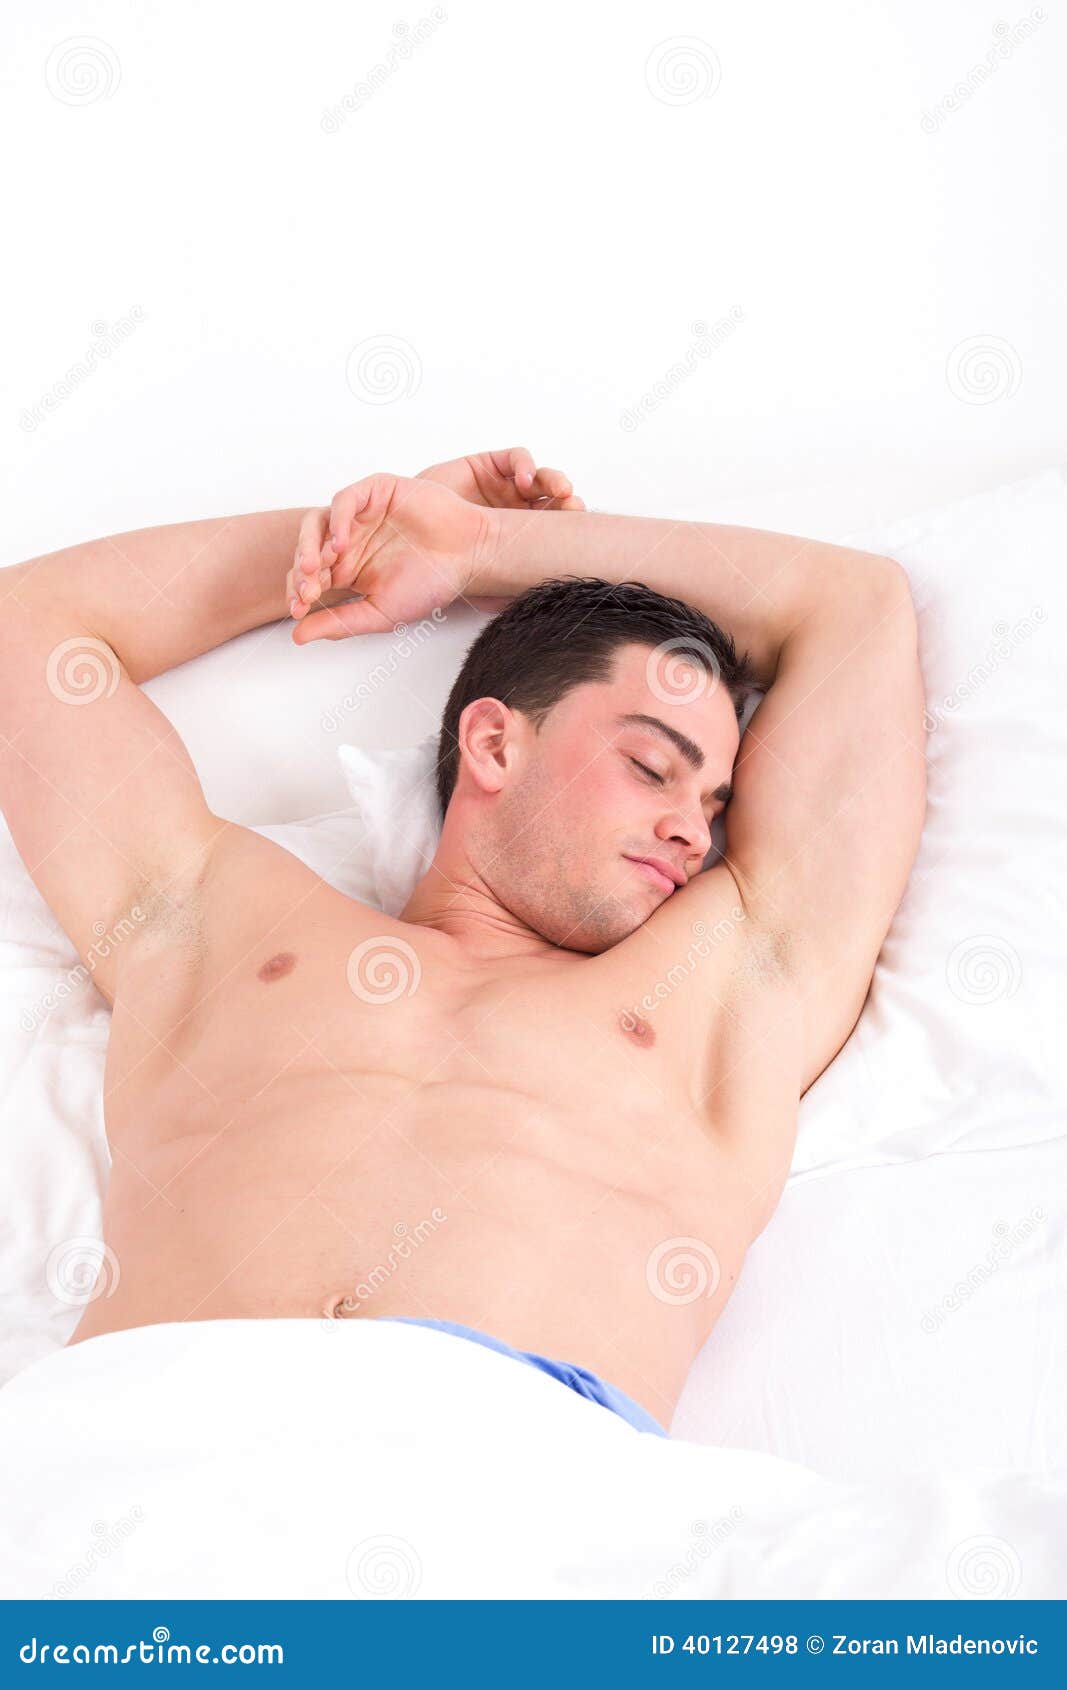 Guys Sleeping Together Naked